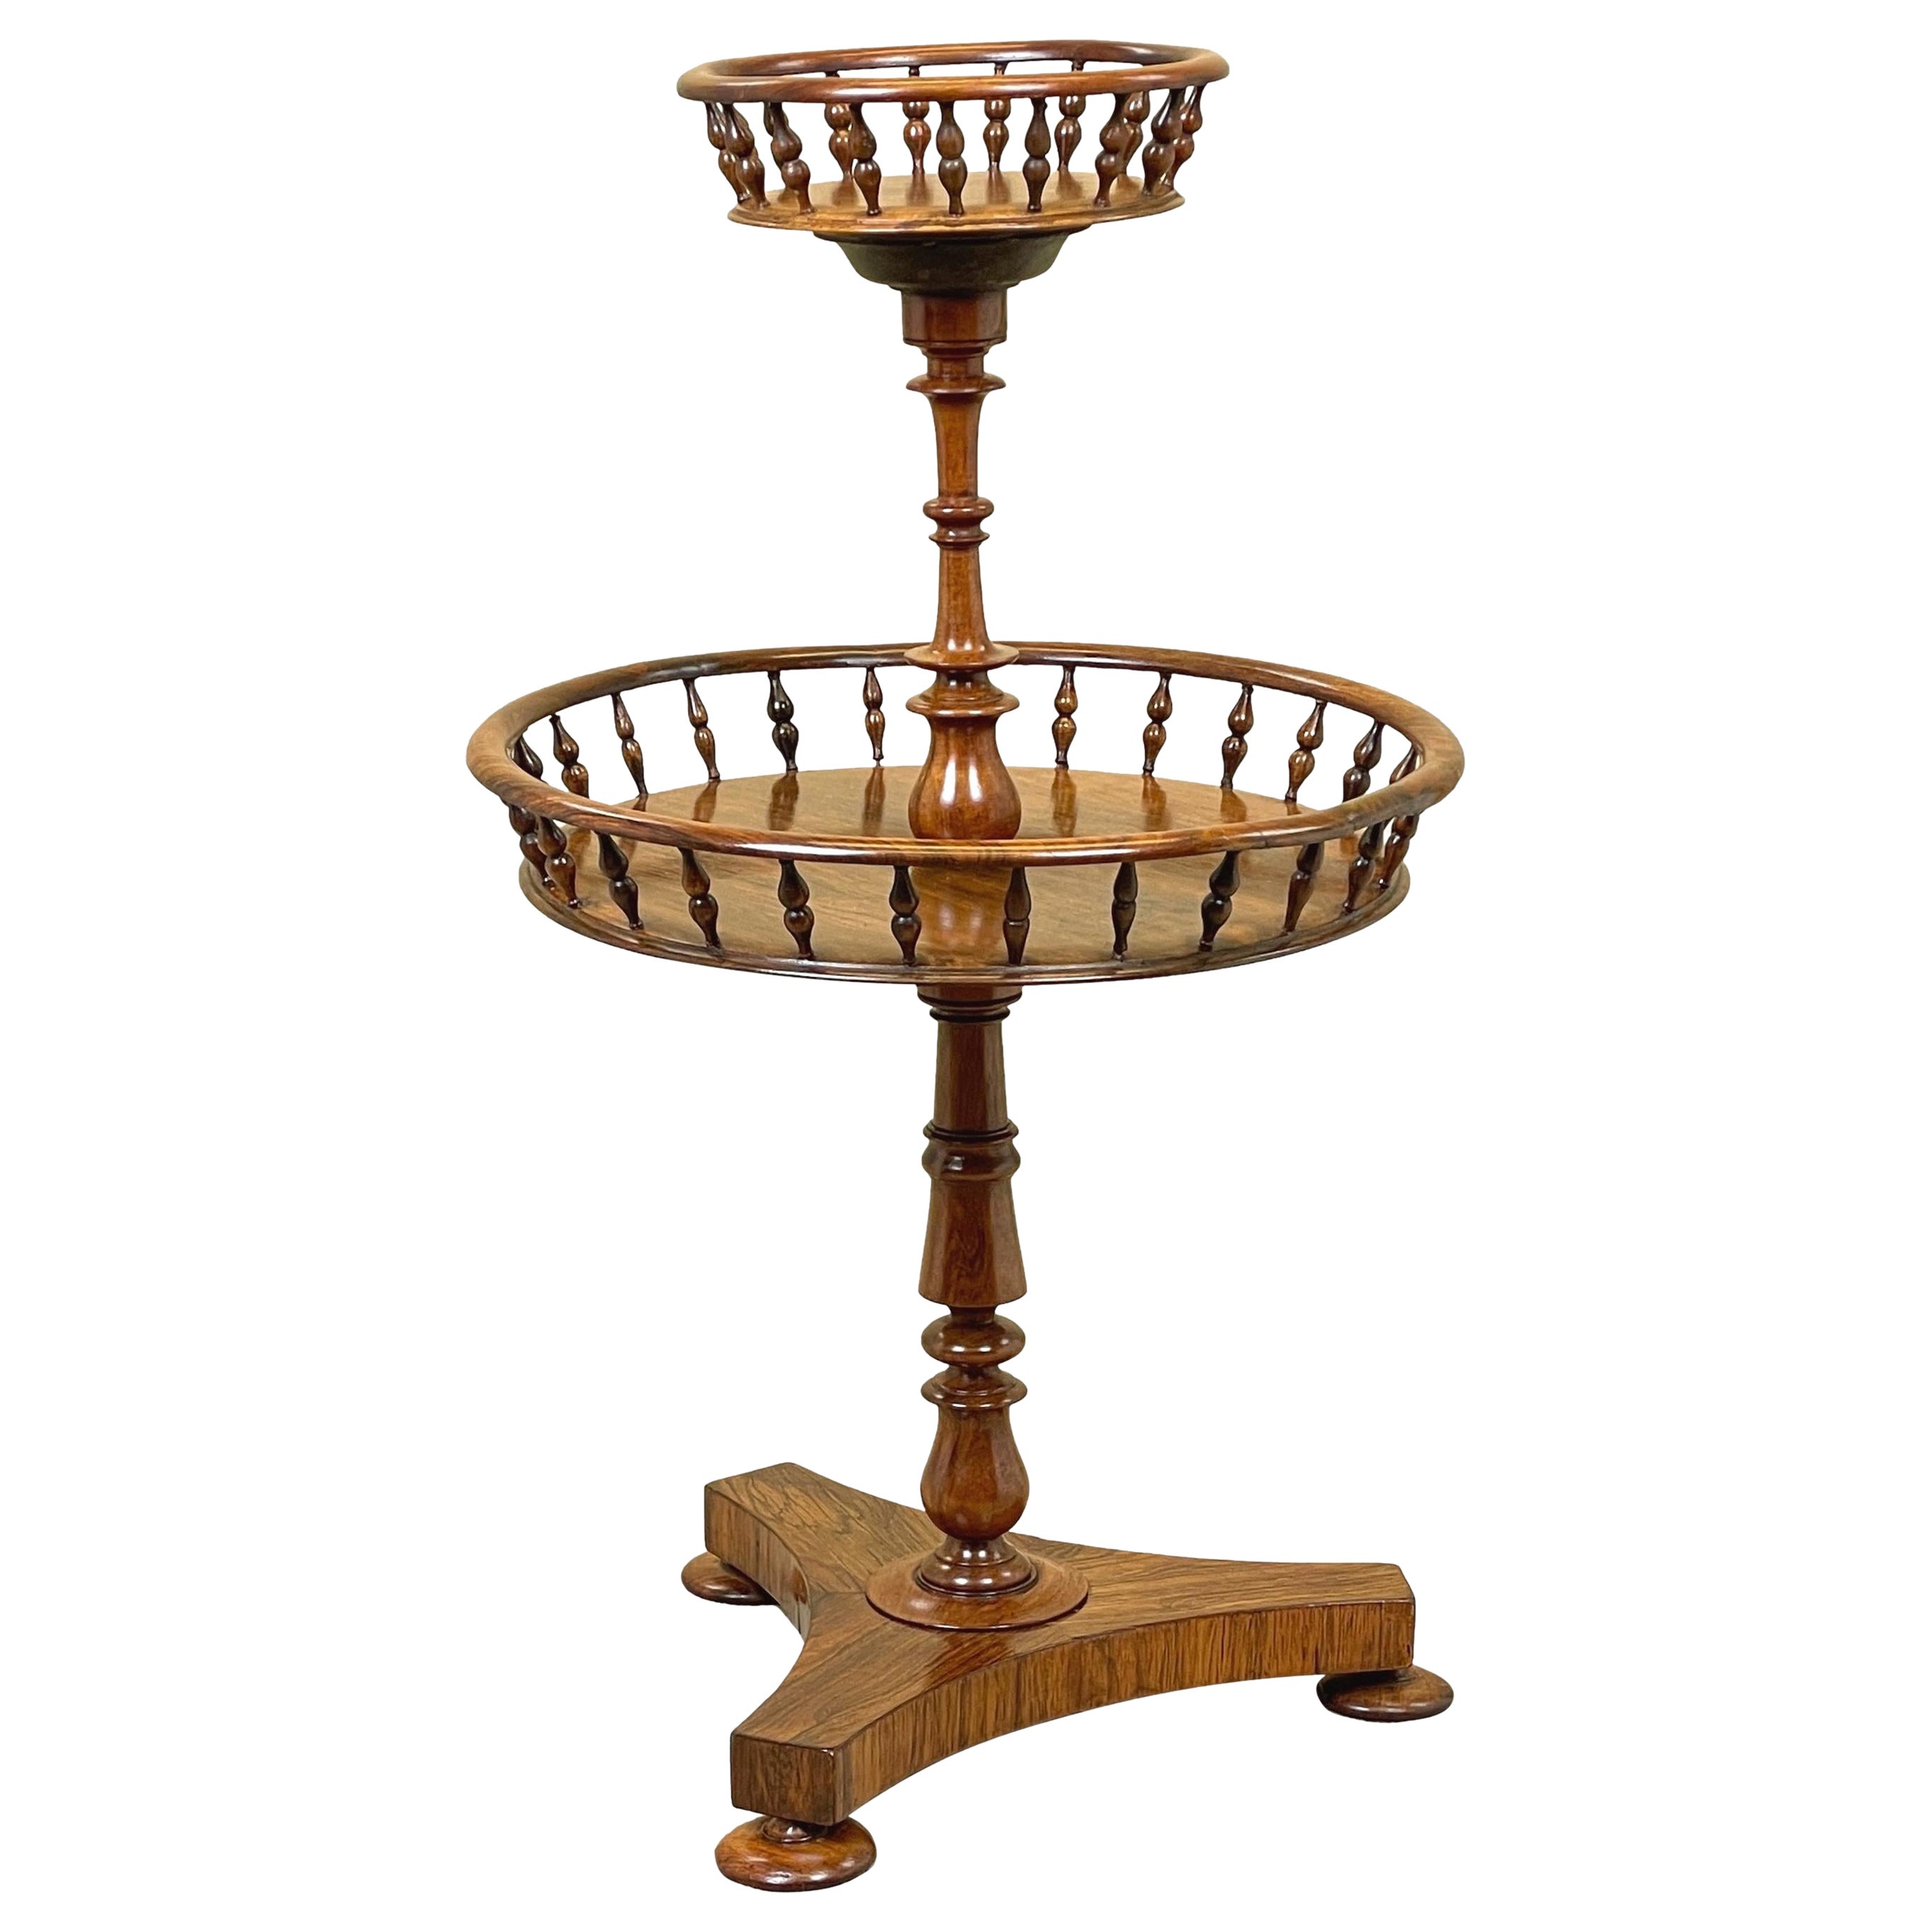 Très bonne table d'appoint circulaire en bois de rose de la fin de la période Regency, de conception inhabituelle, peut-être conçue à l'origine pour le stockage de la laine, comportant deux niveaux circulaires bien figurés avec d'élégantes galeries